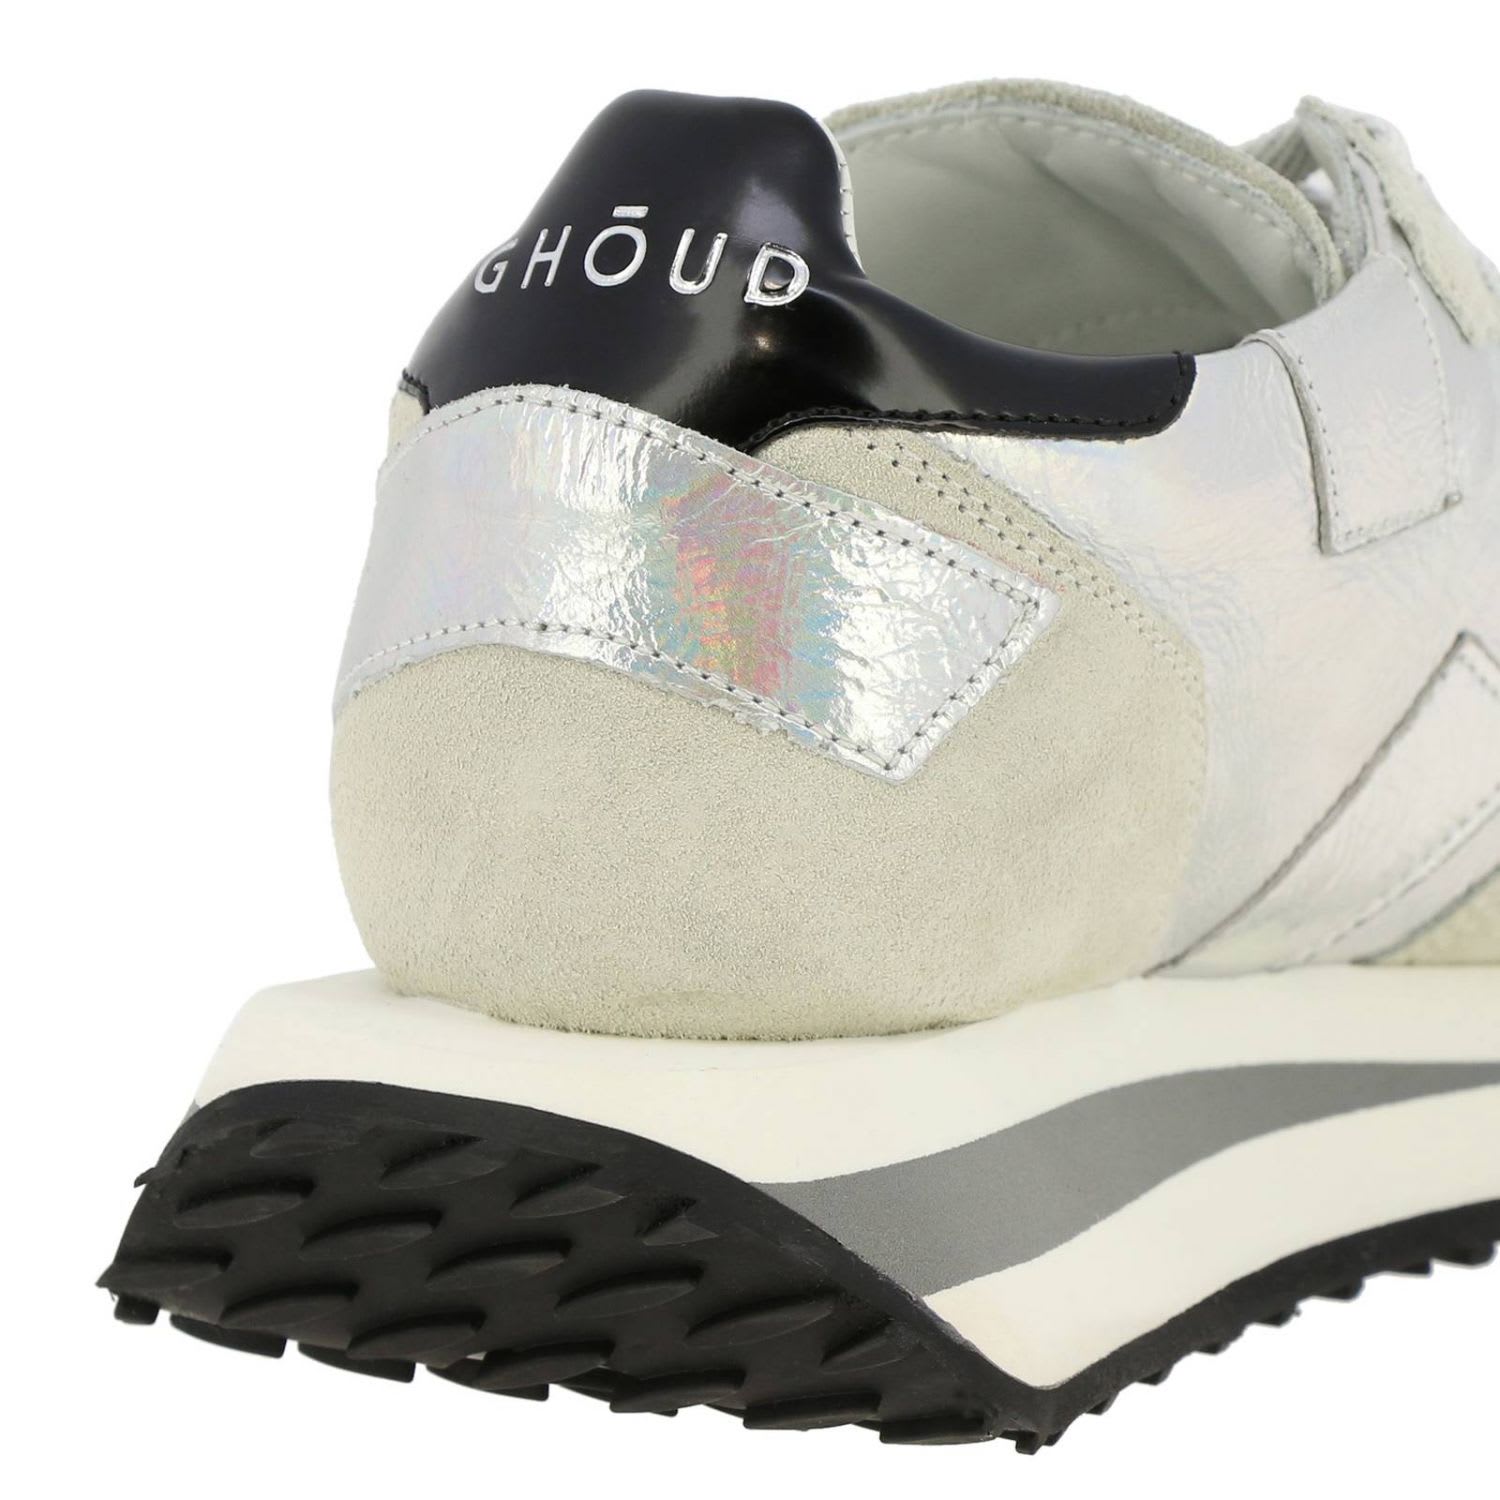 ghoud sneakers sale